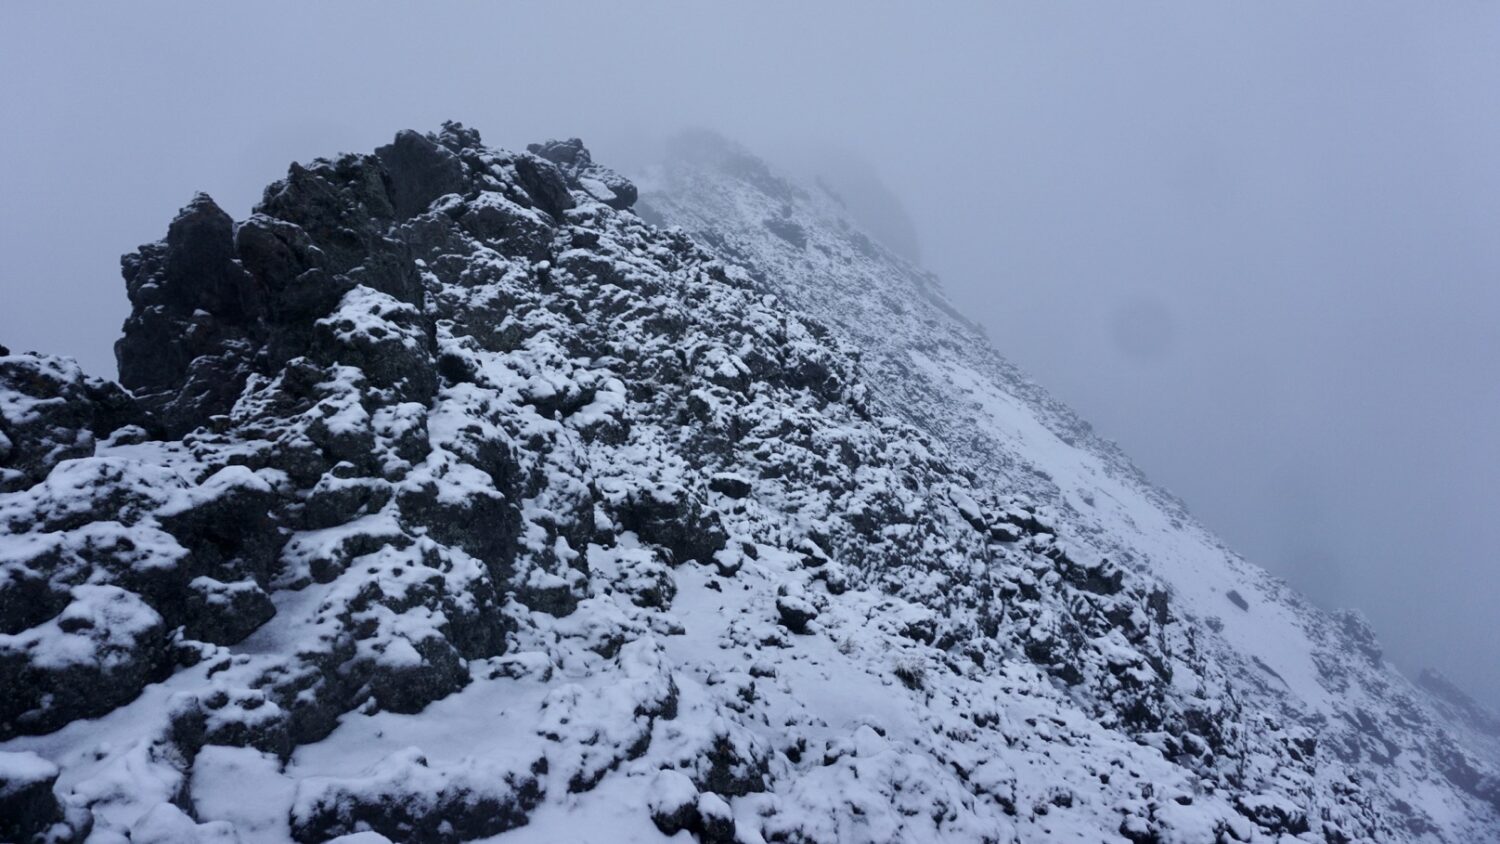 Snow summit Mount Meru, Arusha